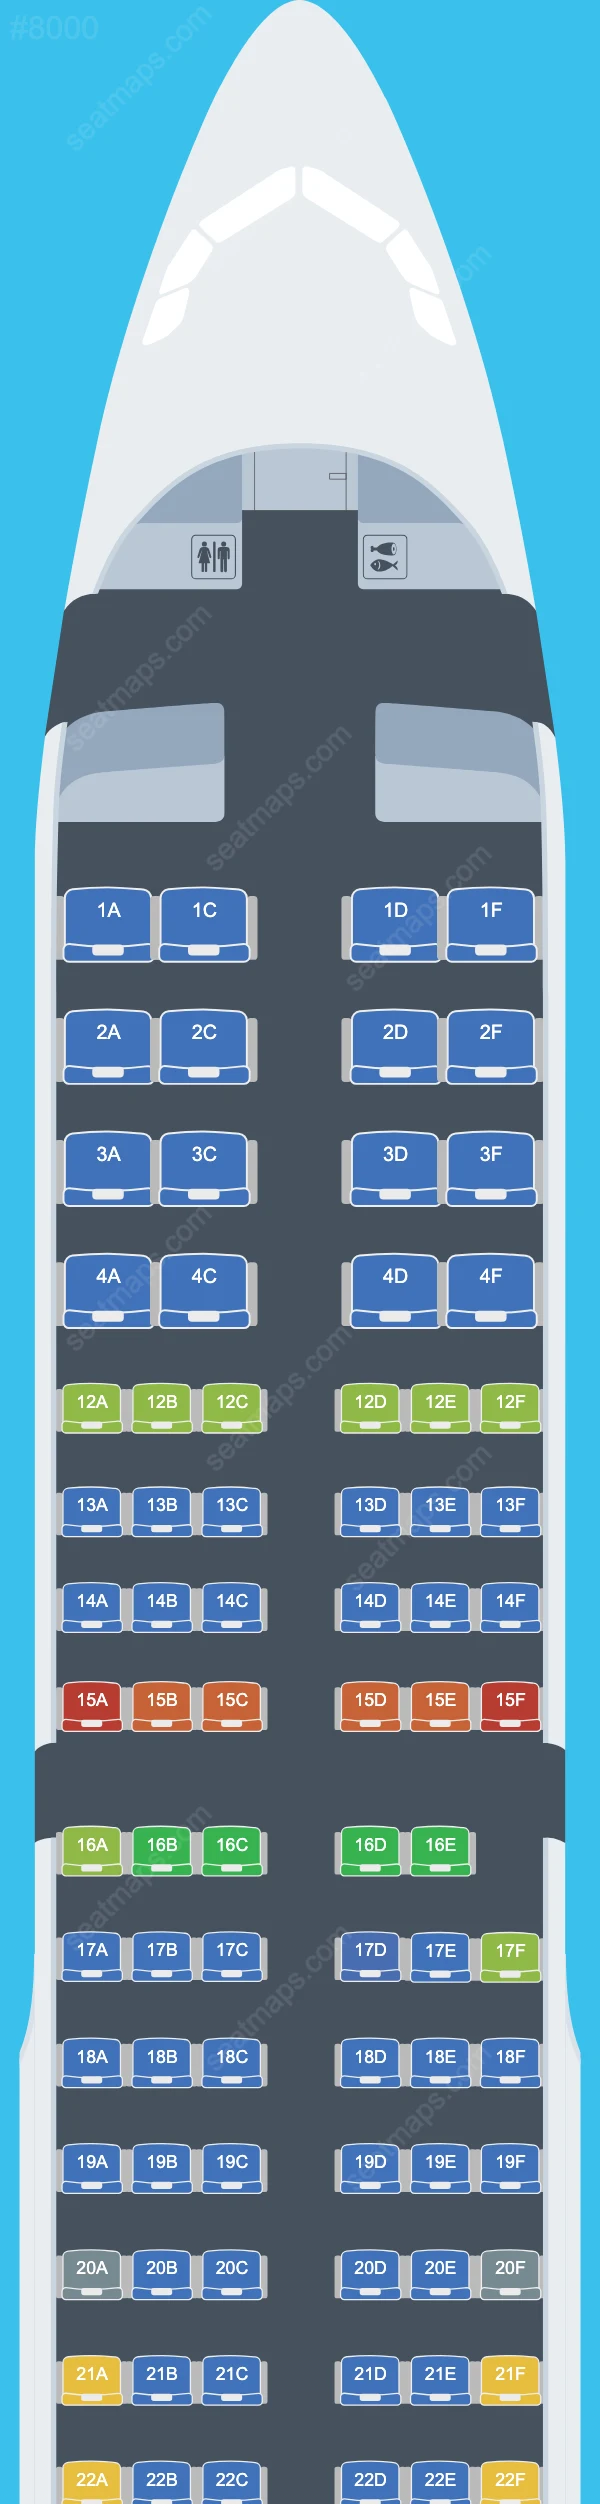 Air Canada Airbus A321 Seat Maps A321-200 V.1